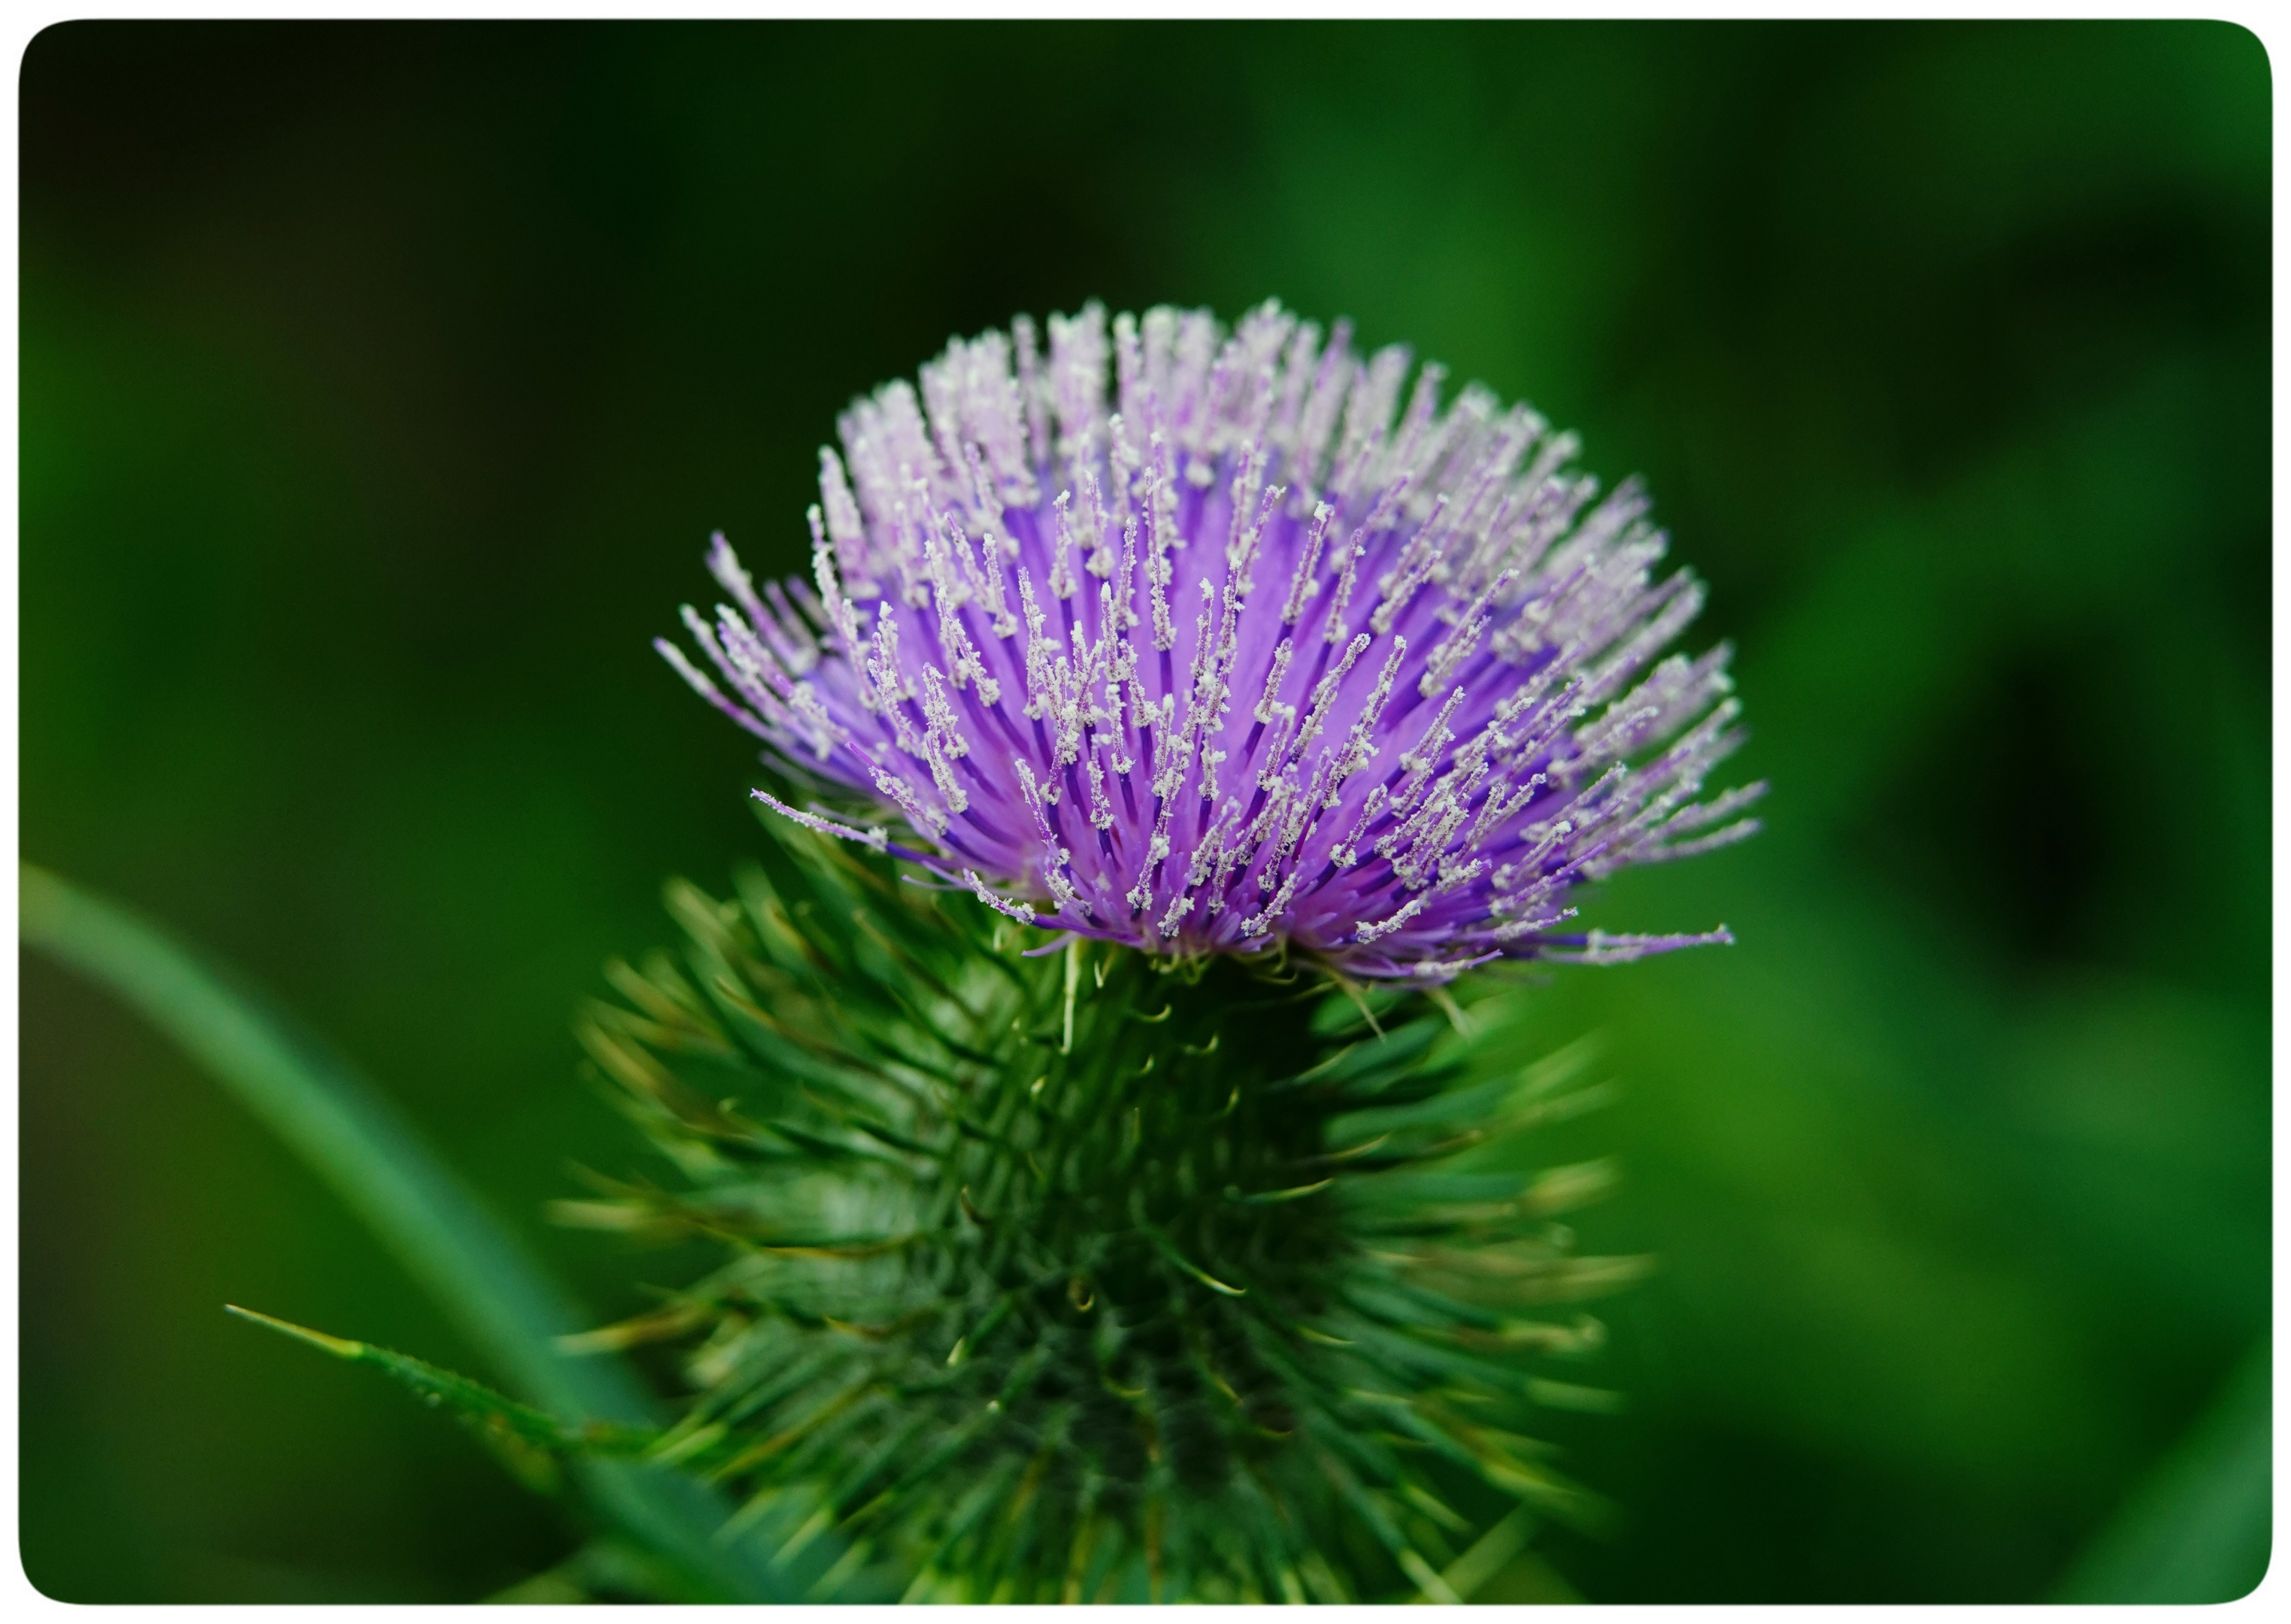 它还是苏格兰的国花. 花语:独立,严格,简朴,权威.